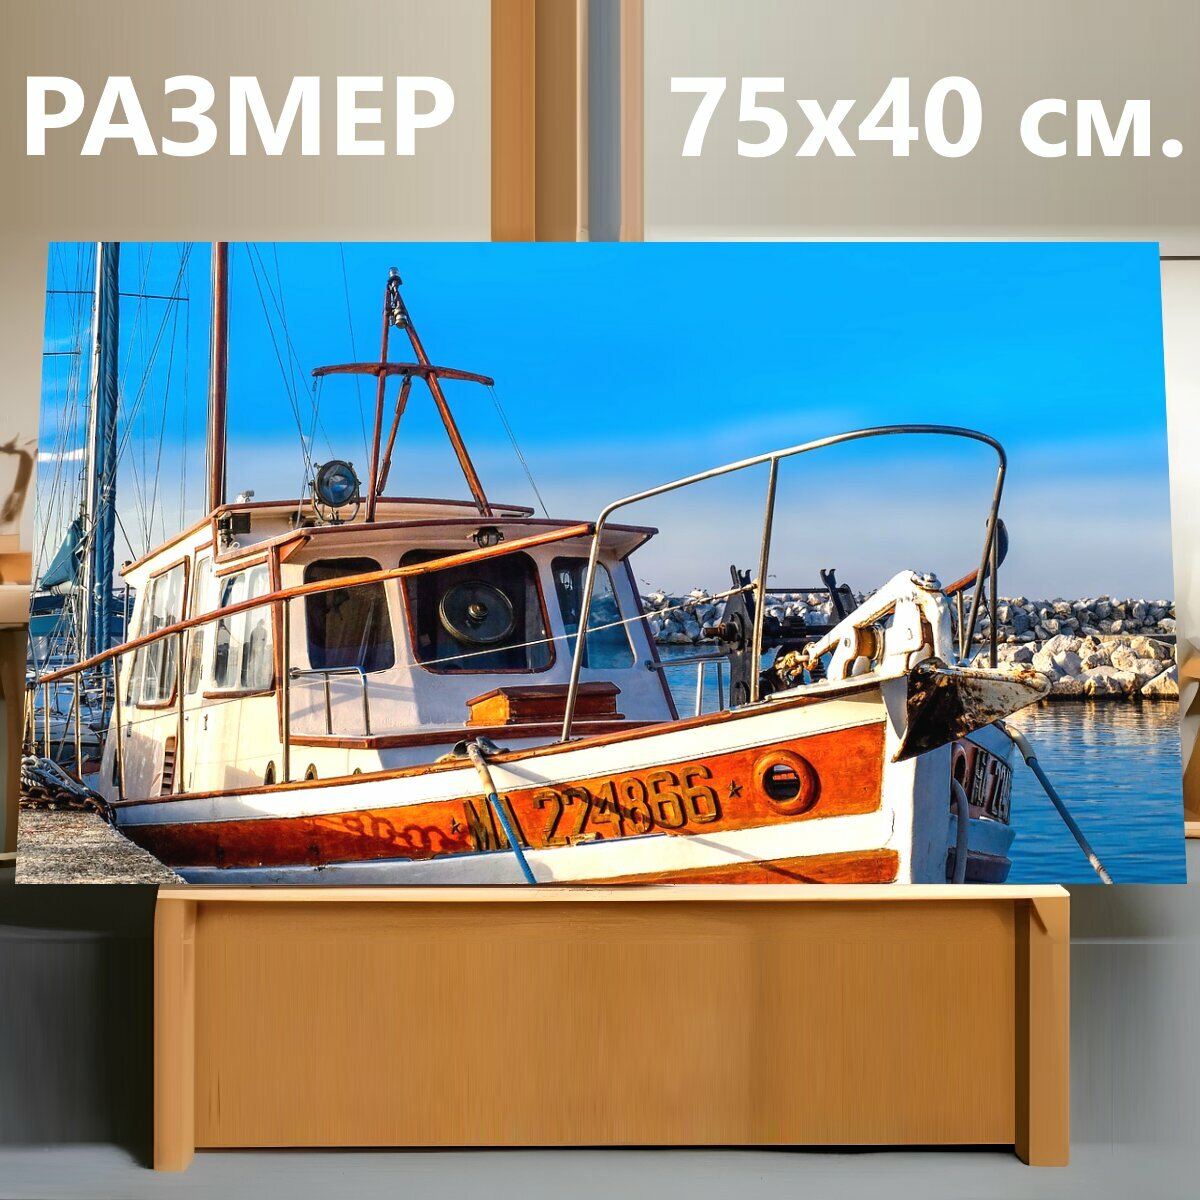 Картина на холсте "Рыболовная лодка, лодка, барк" на подрамнике 75х40 см. для интерьера